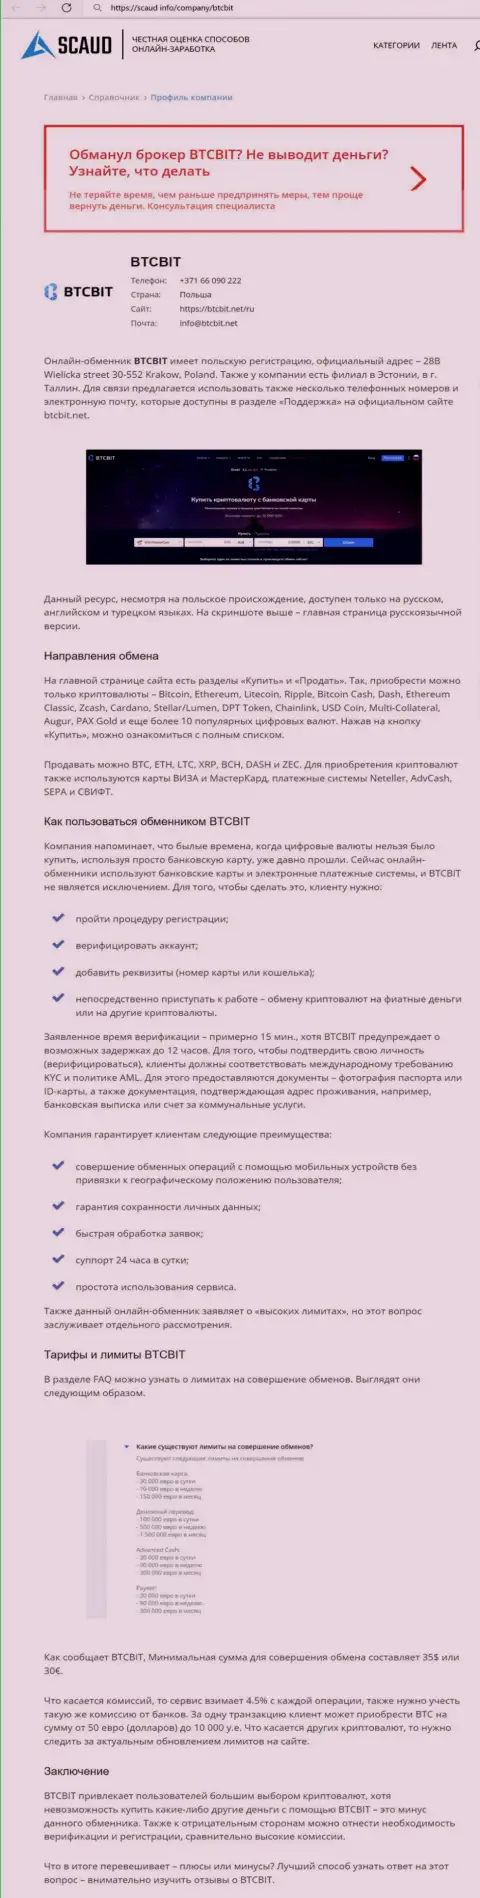 Детальный обзор деятельности организации BTC Bit на сайте scaud info